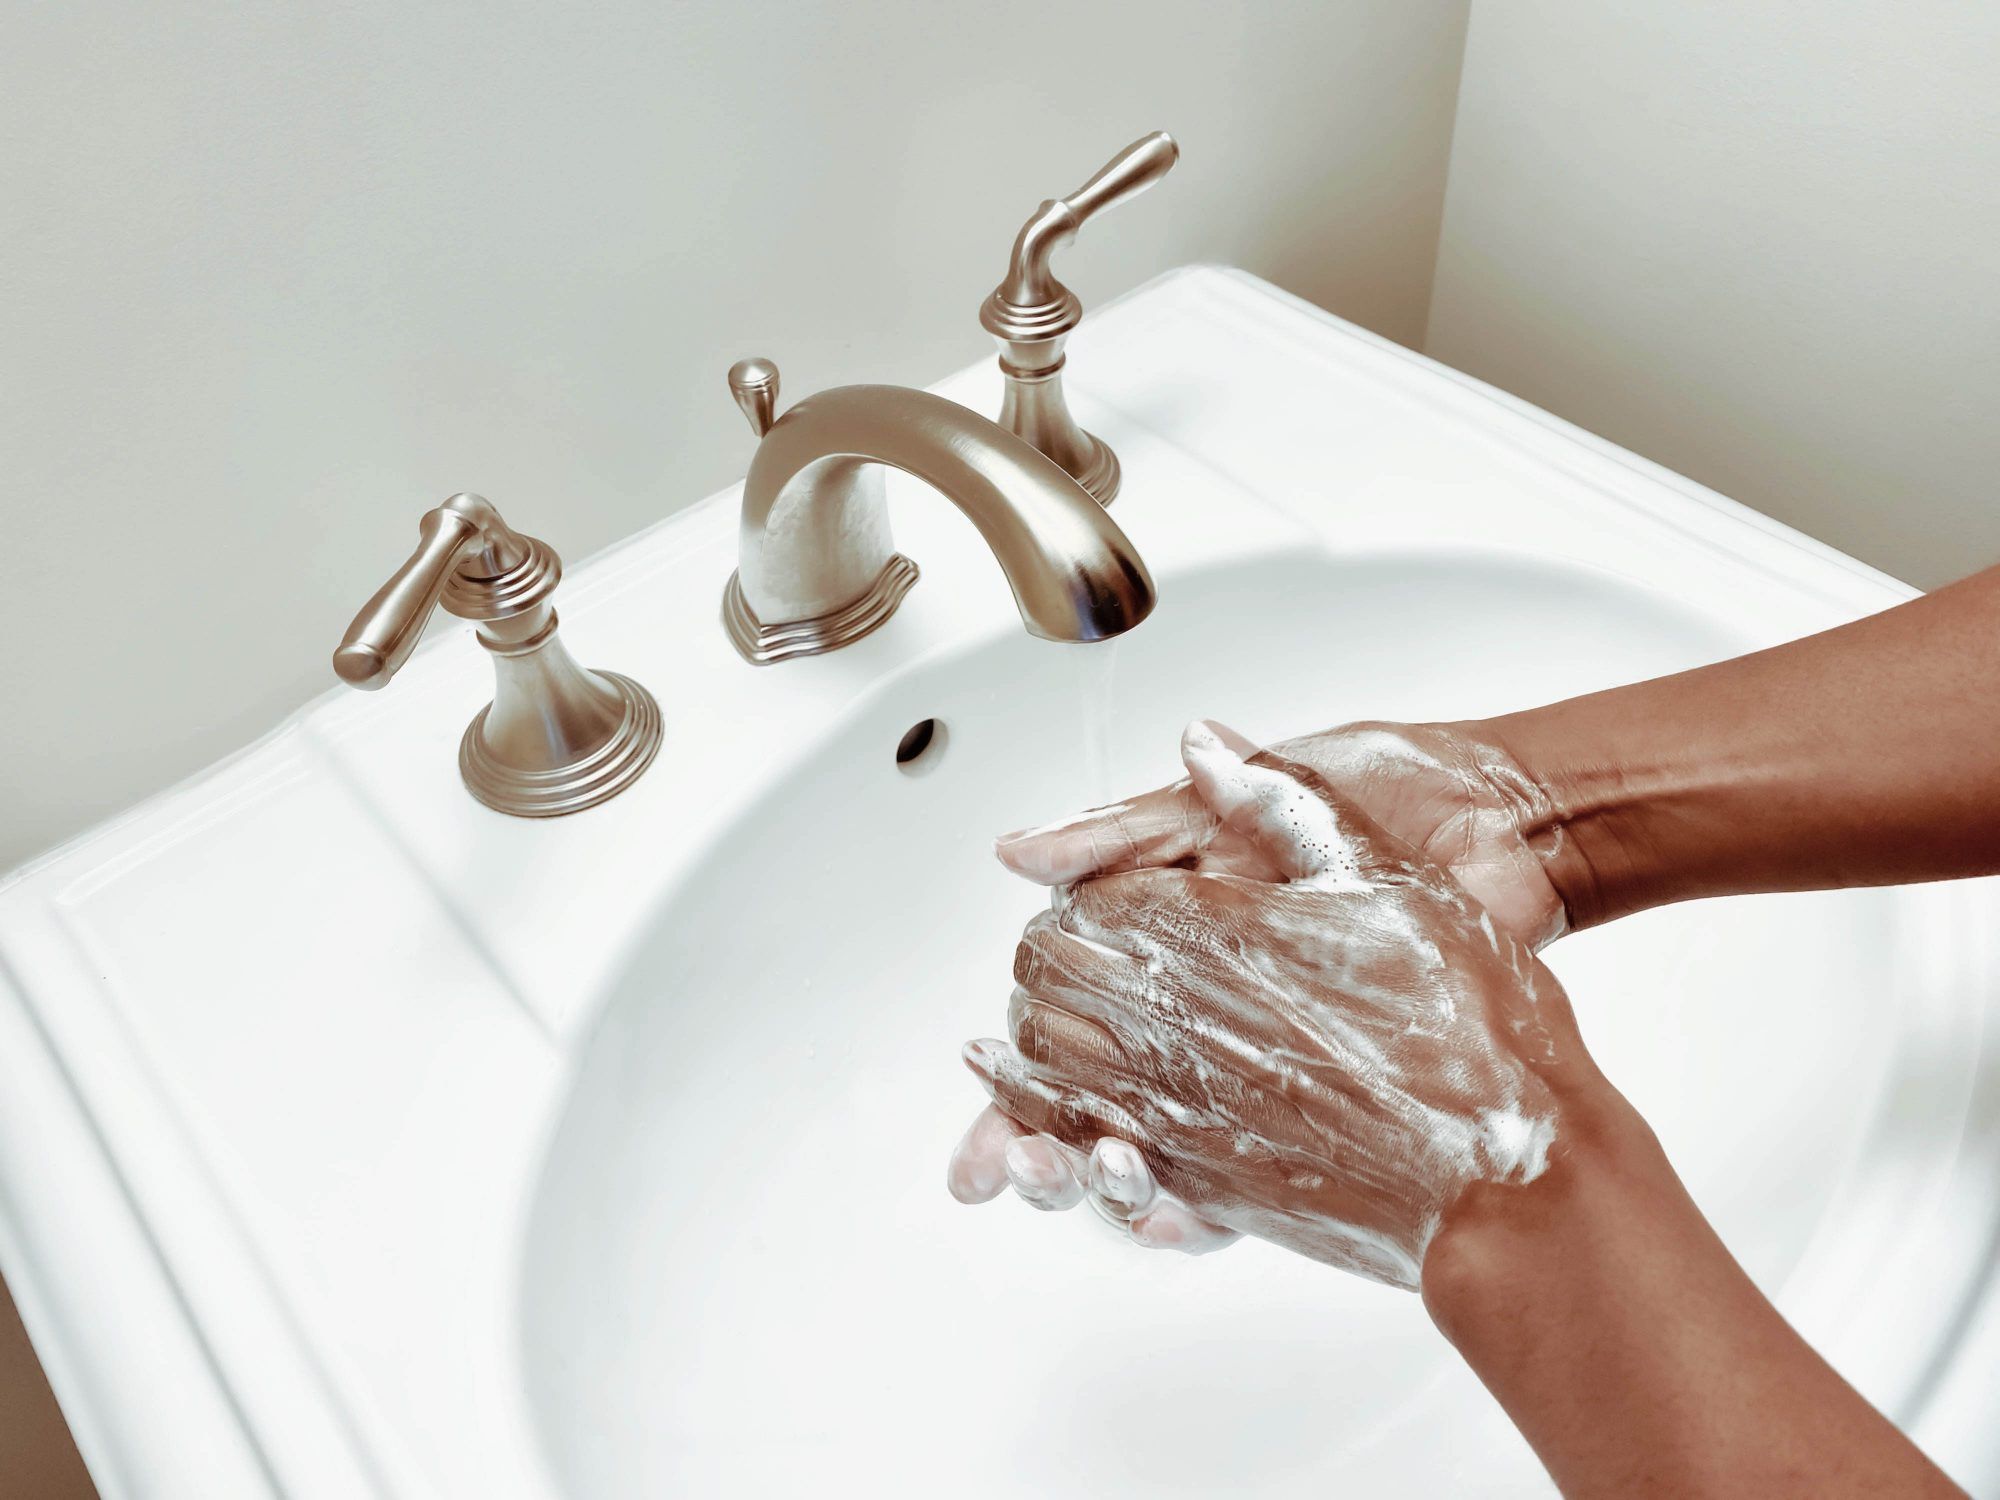 Probabilmente stai commettendo questi 7 errori di lavaggio delle mani: ecco cosa fare invece